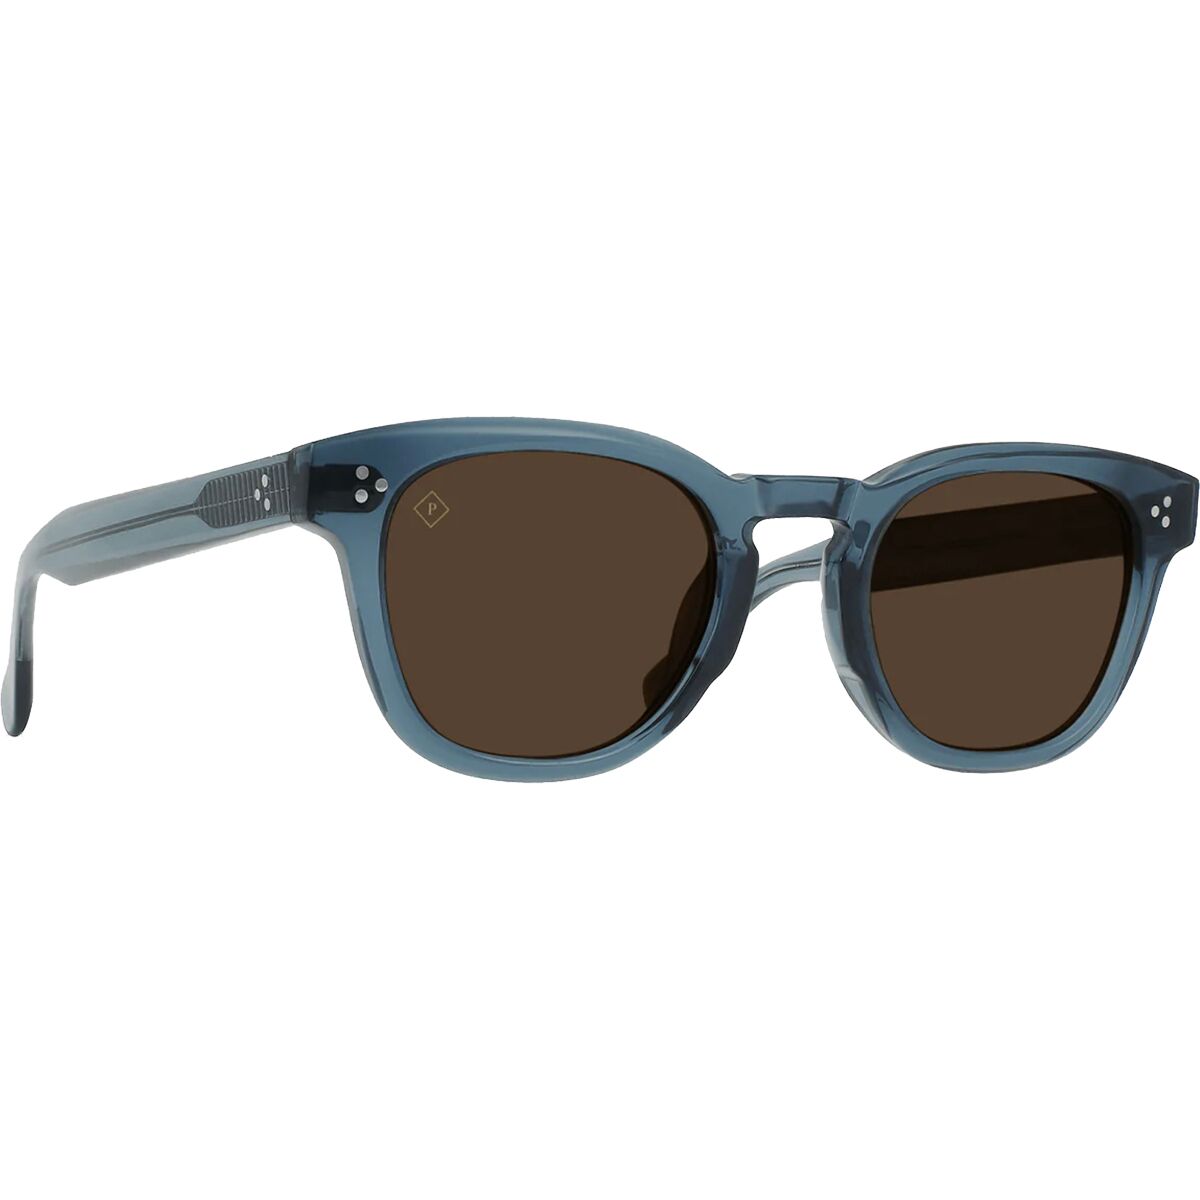 Squire Polarized Sunglasses RAEN Optics